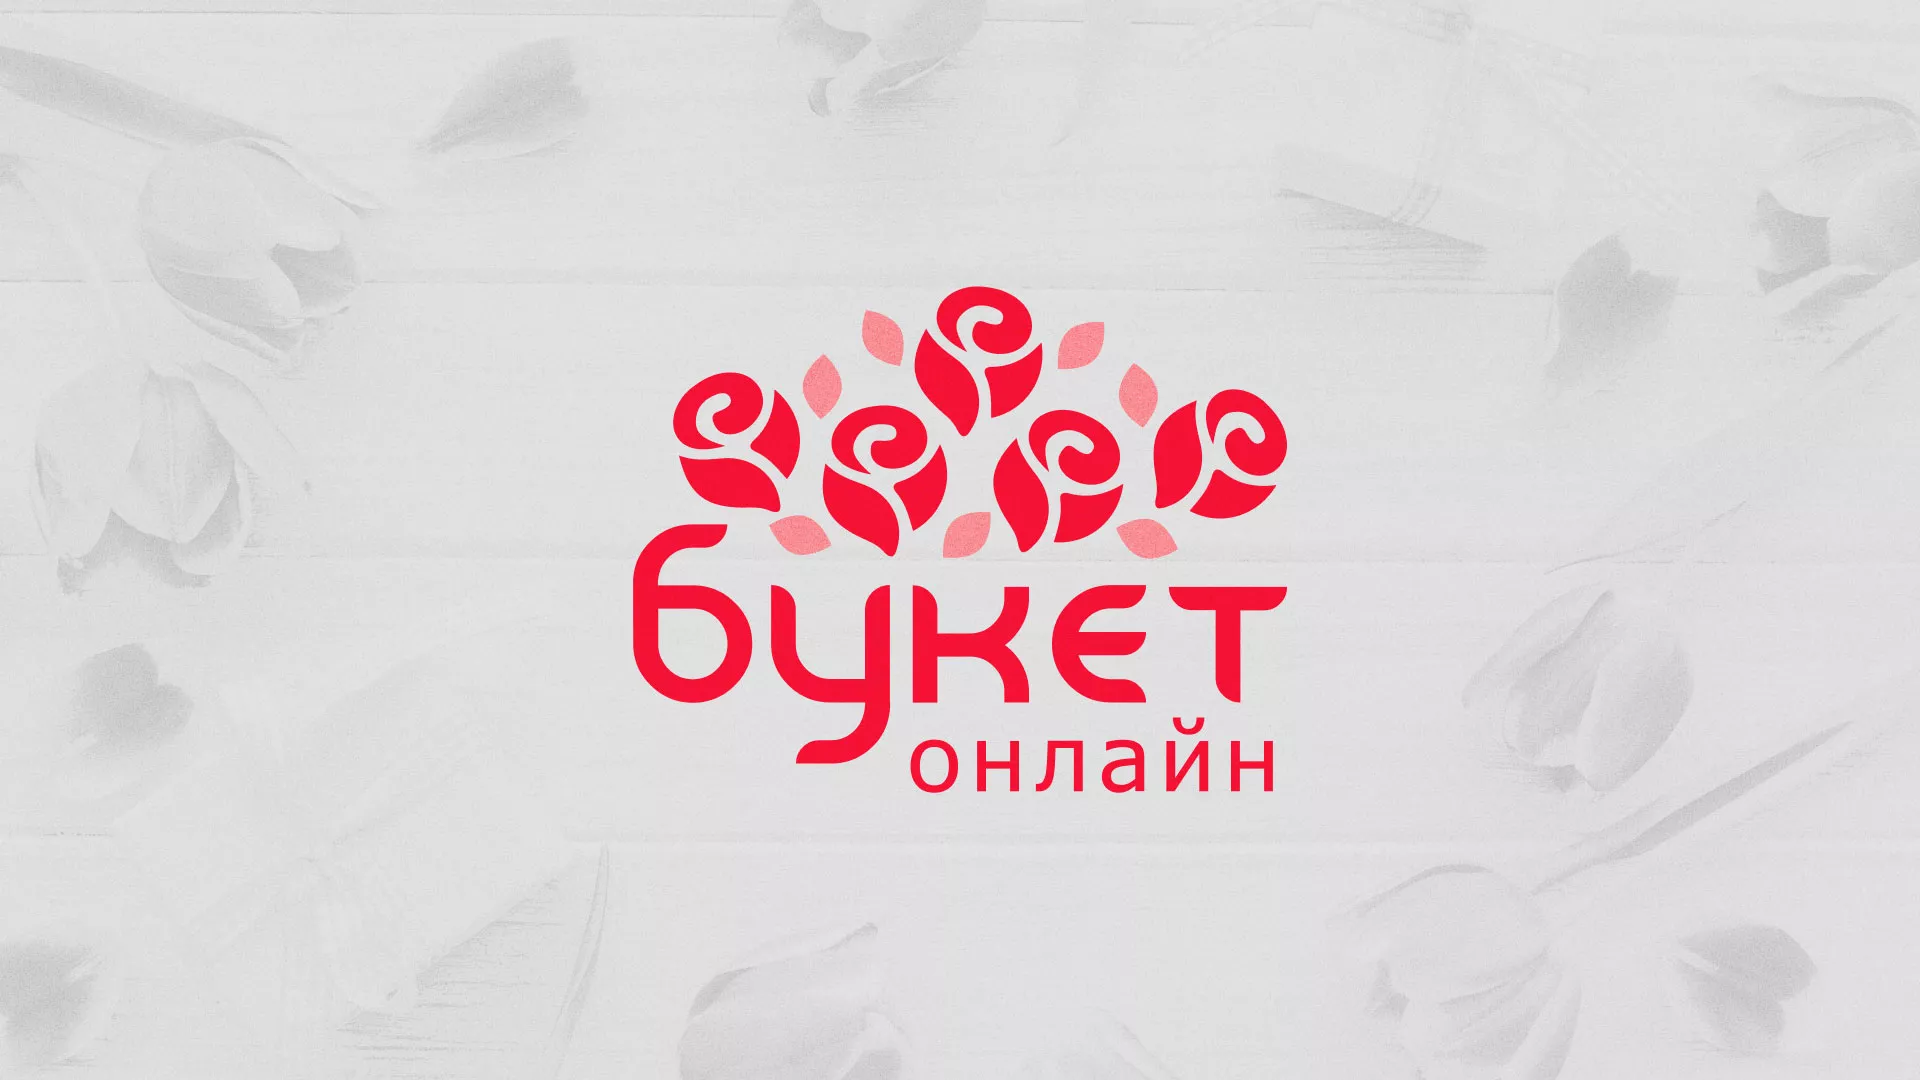 Создание интернет-магазина «Букет-онлайн» по цветам в Владивостоке